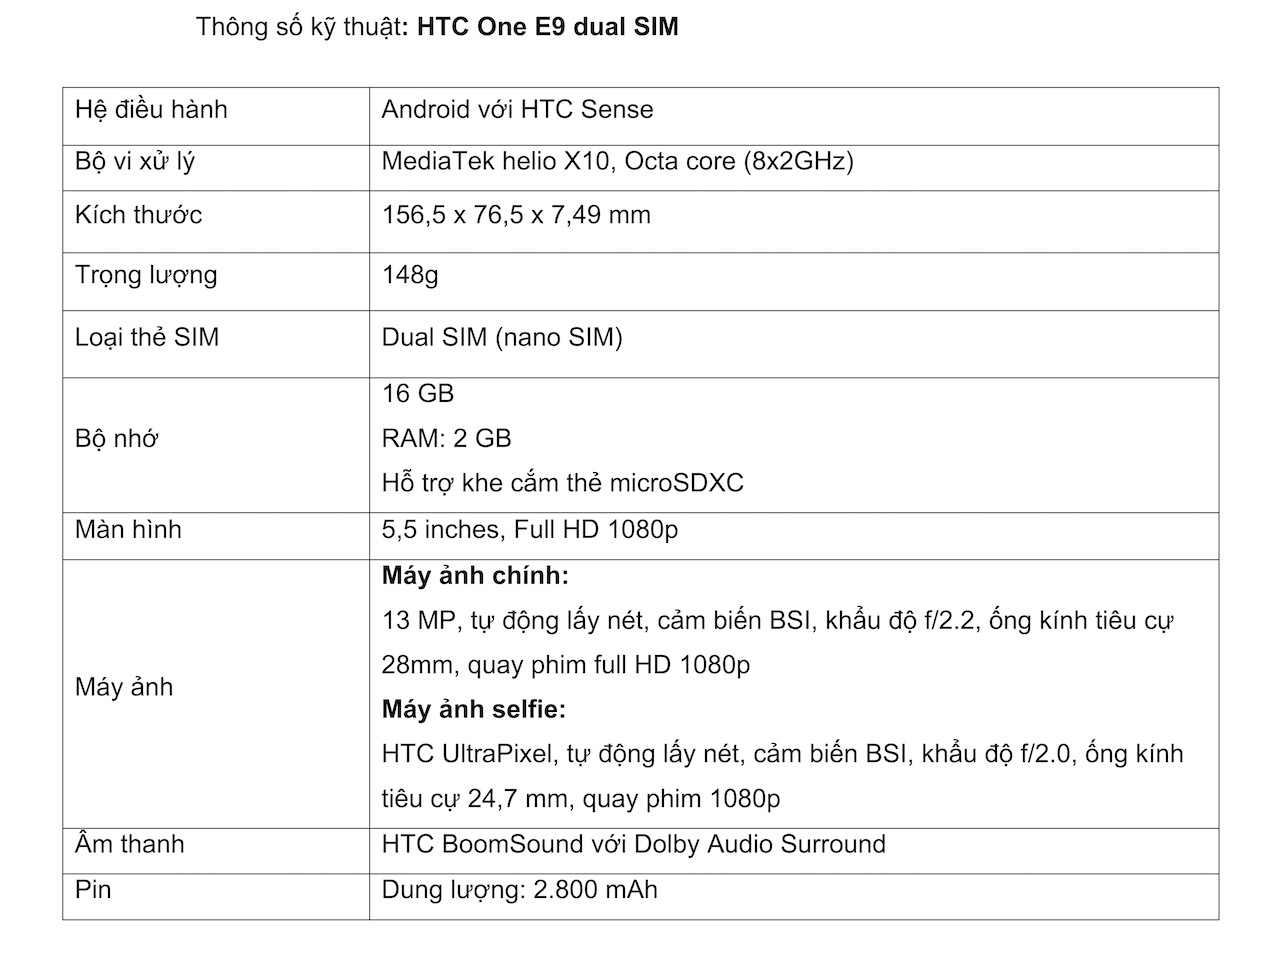 [TSKT] HTC One E9 dual sim (1)